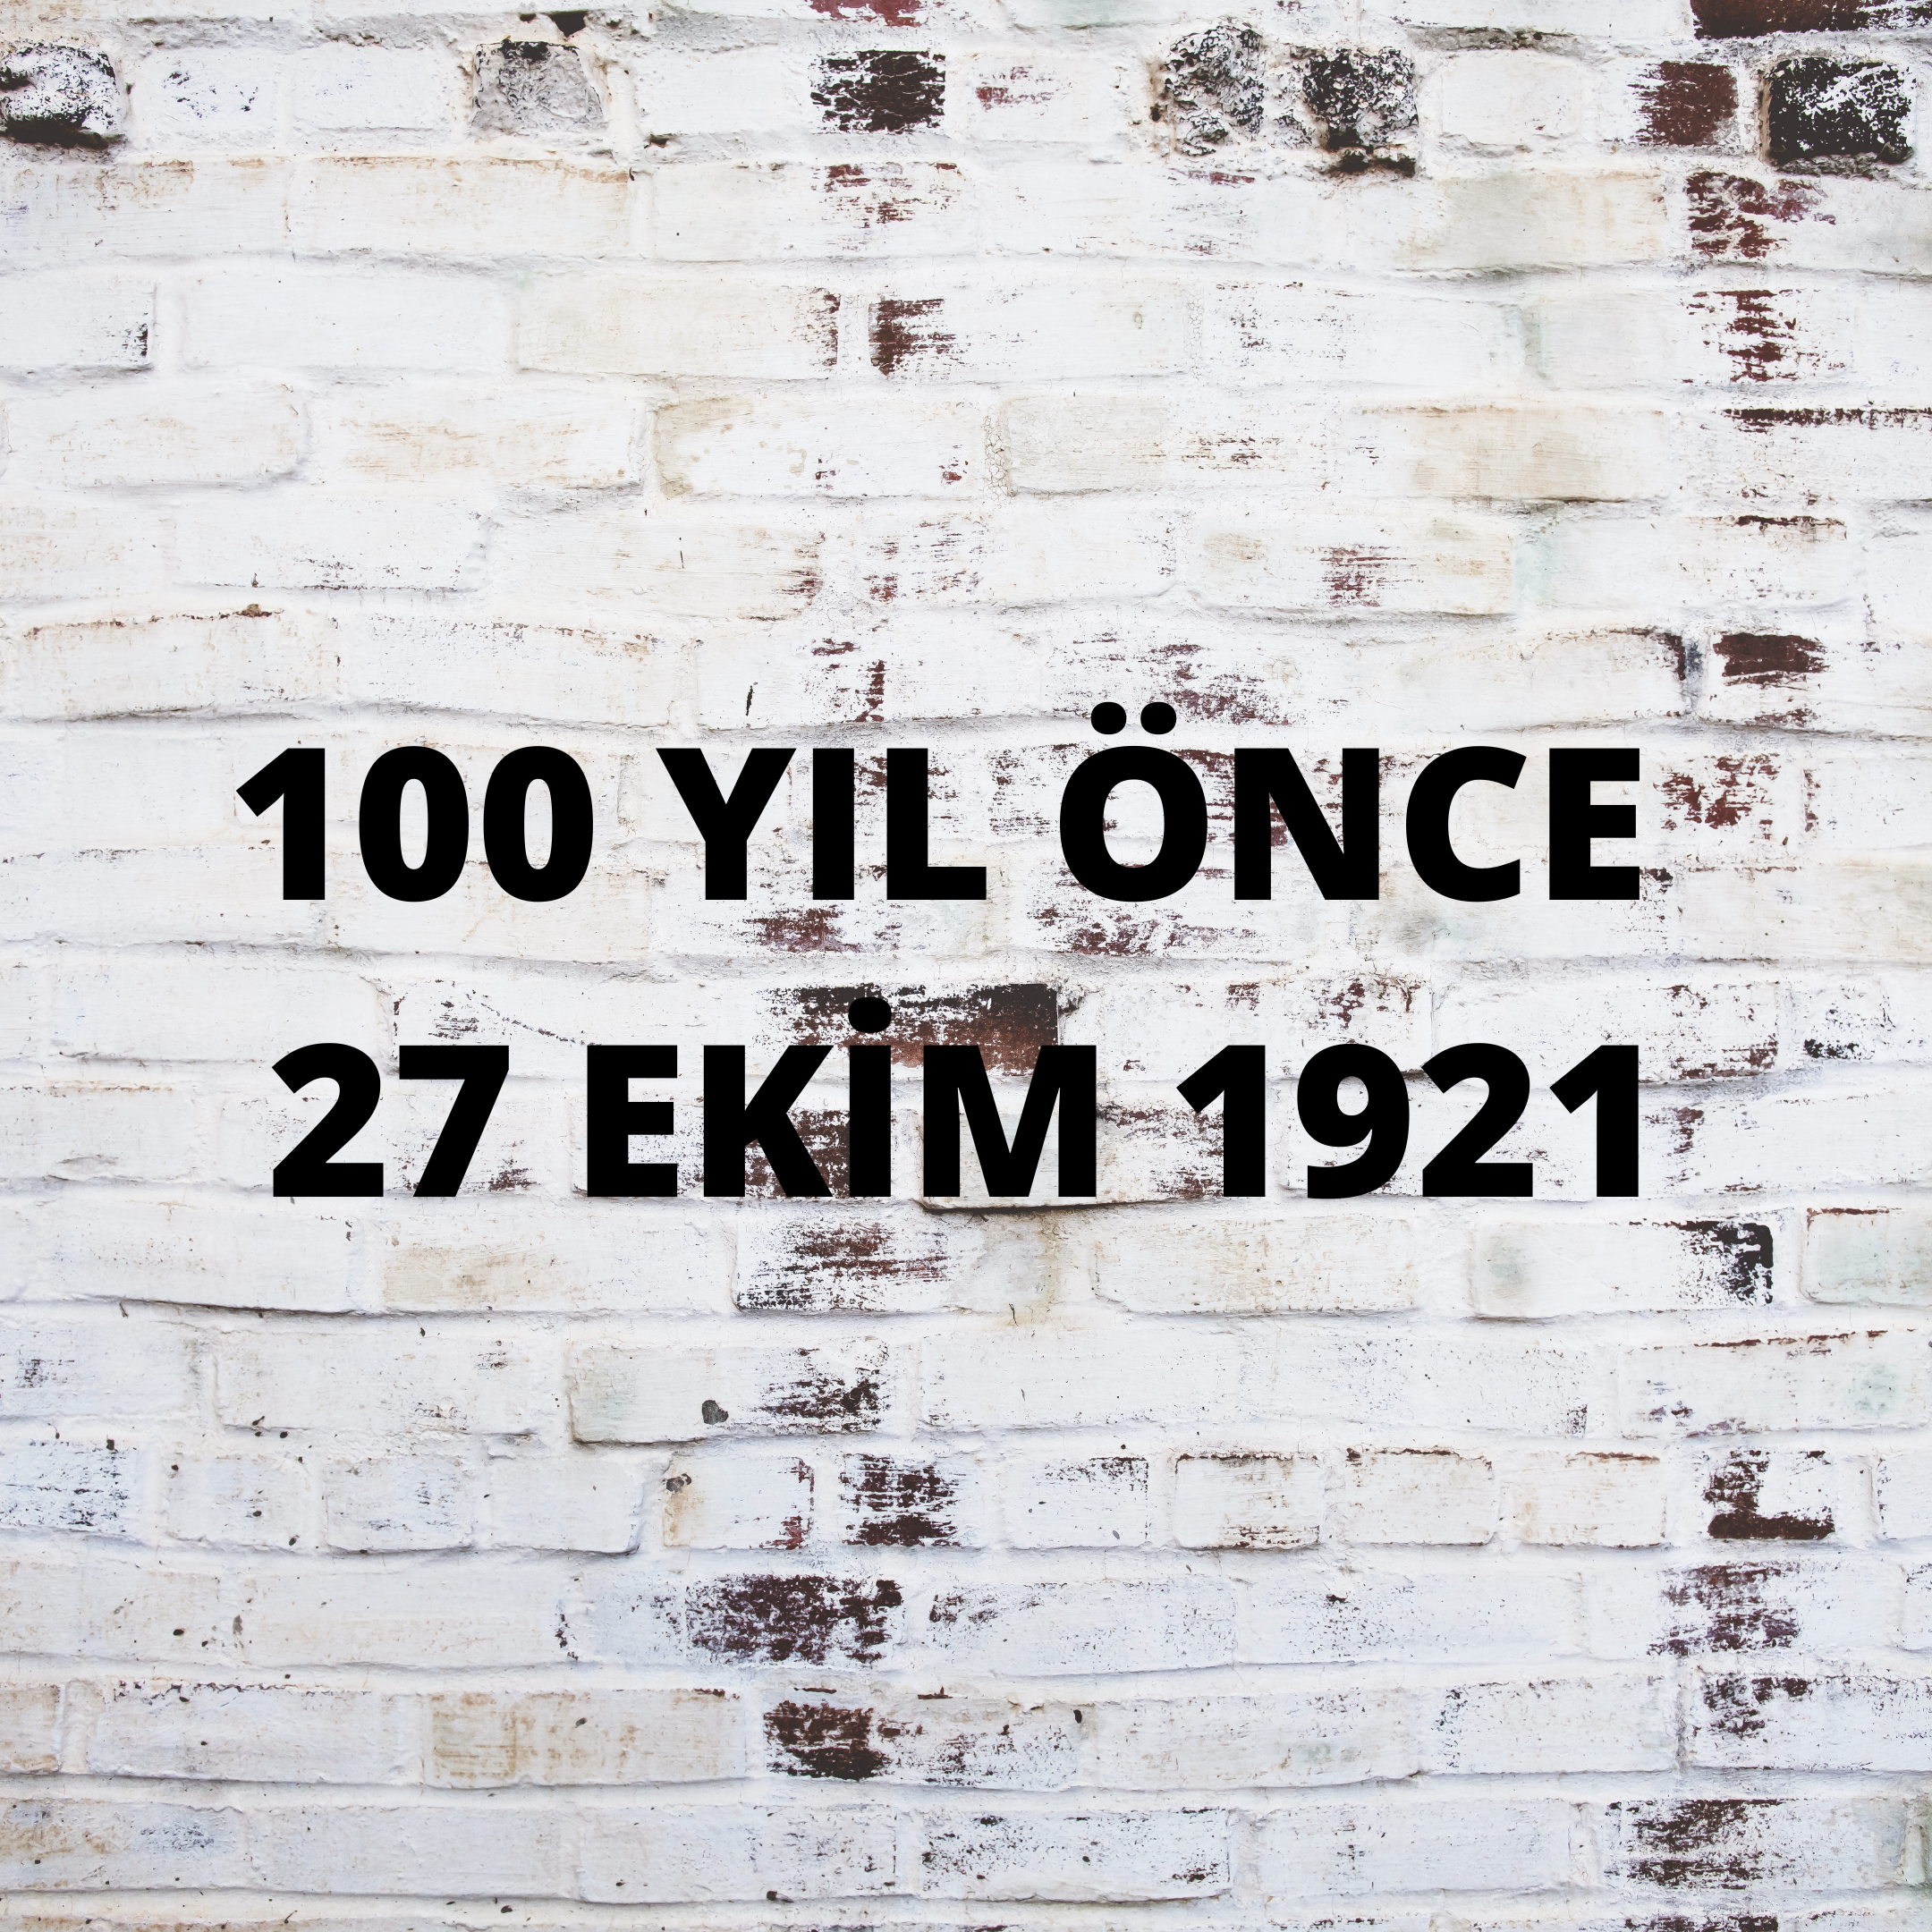 100 YIL ÖNCE 27 EKİM 1921